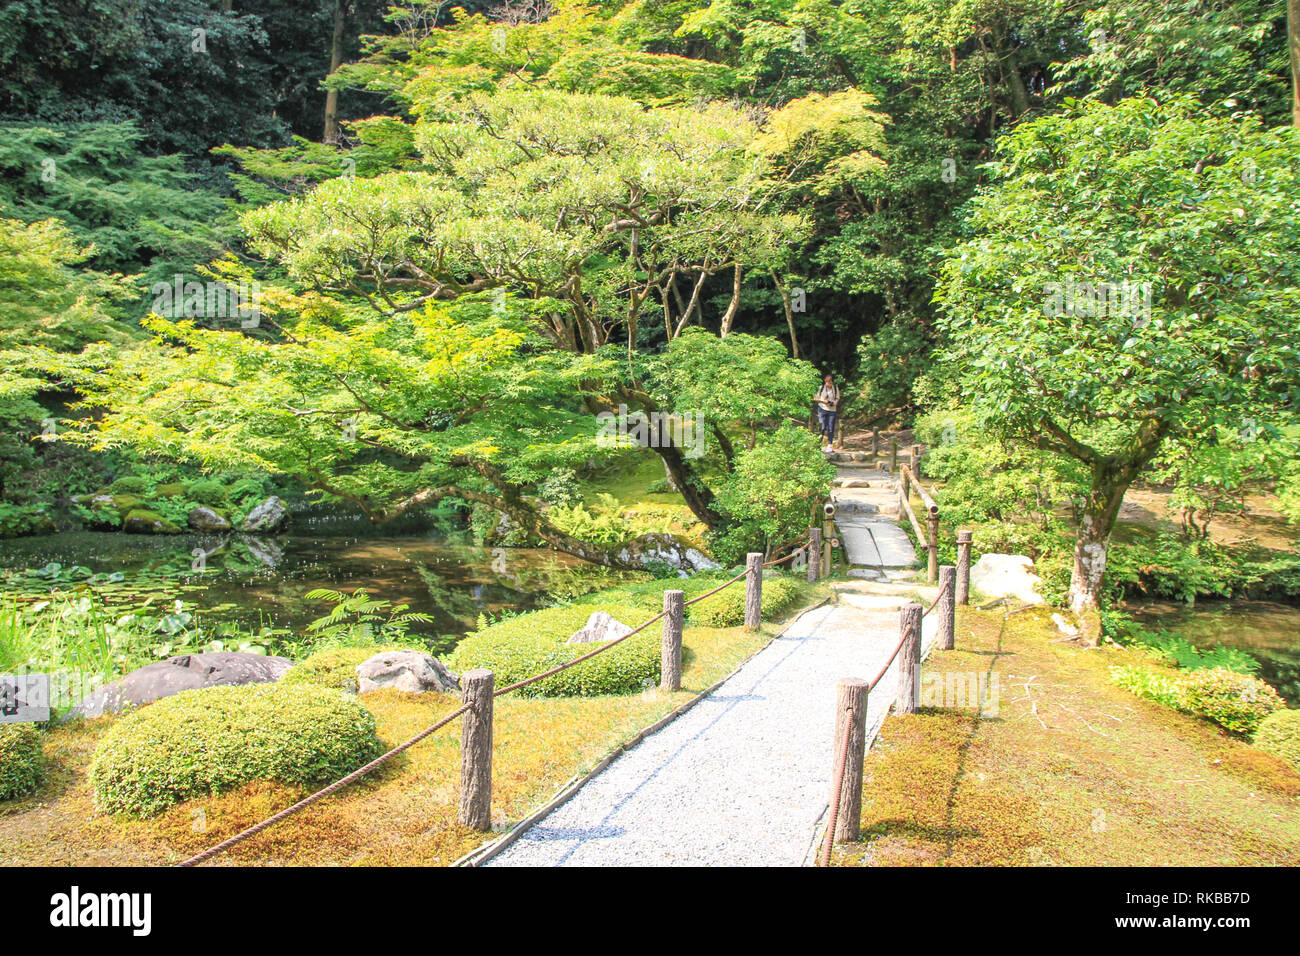 Belle architecture de jardin japonais Koko-en garden, Japon Banque D'Images